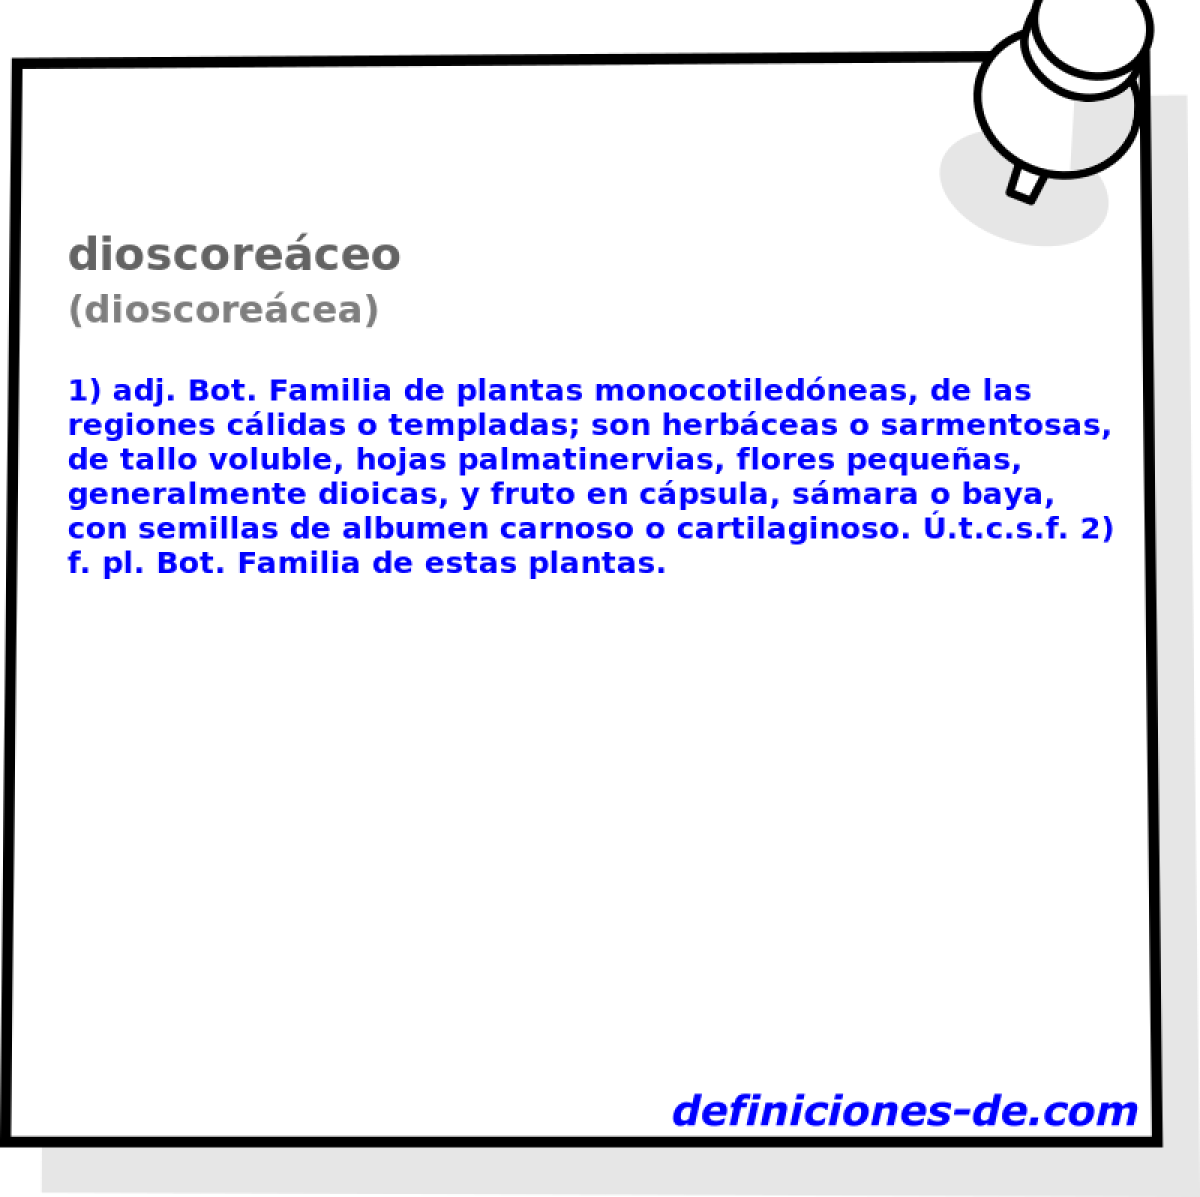 dioscoreceo (dioscorecea)